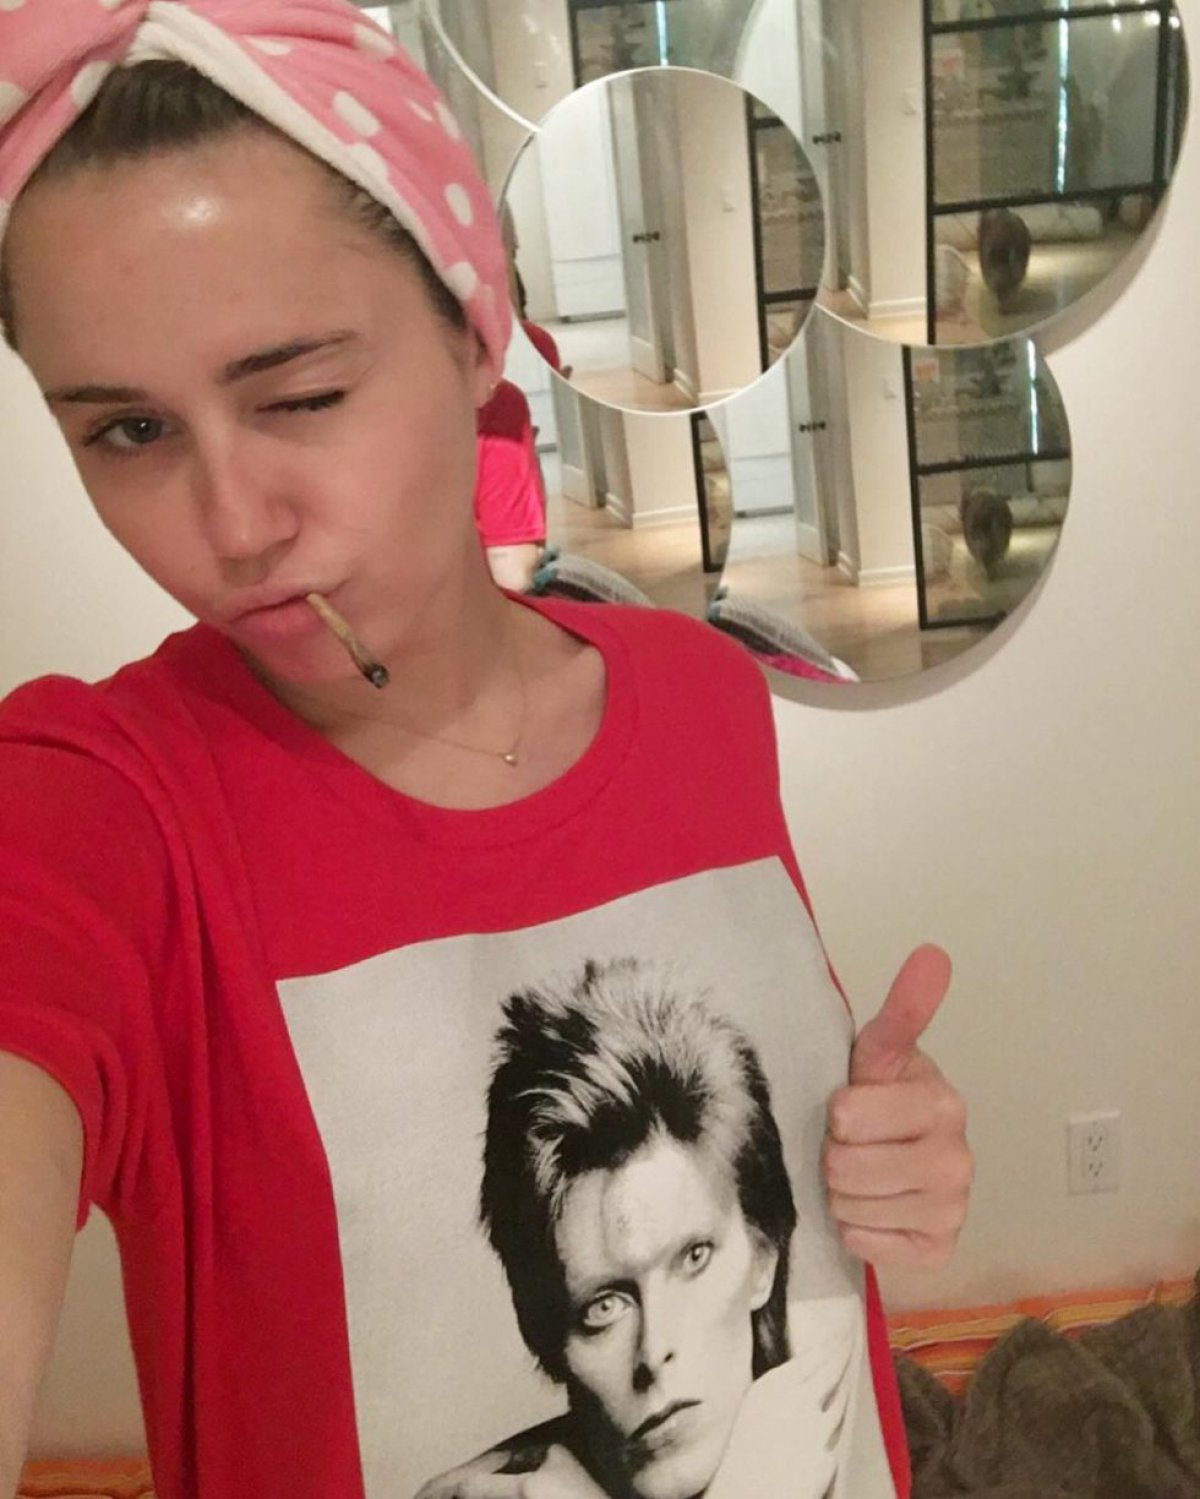 Otra vez Miley, esta vez llevando a David Bowie en su pecho